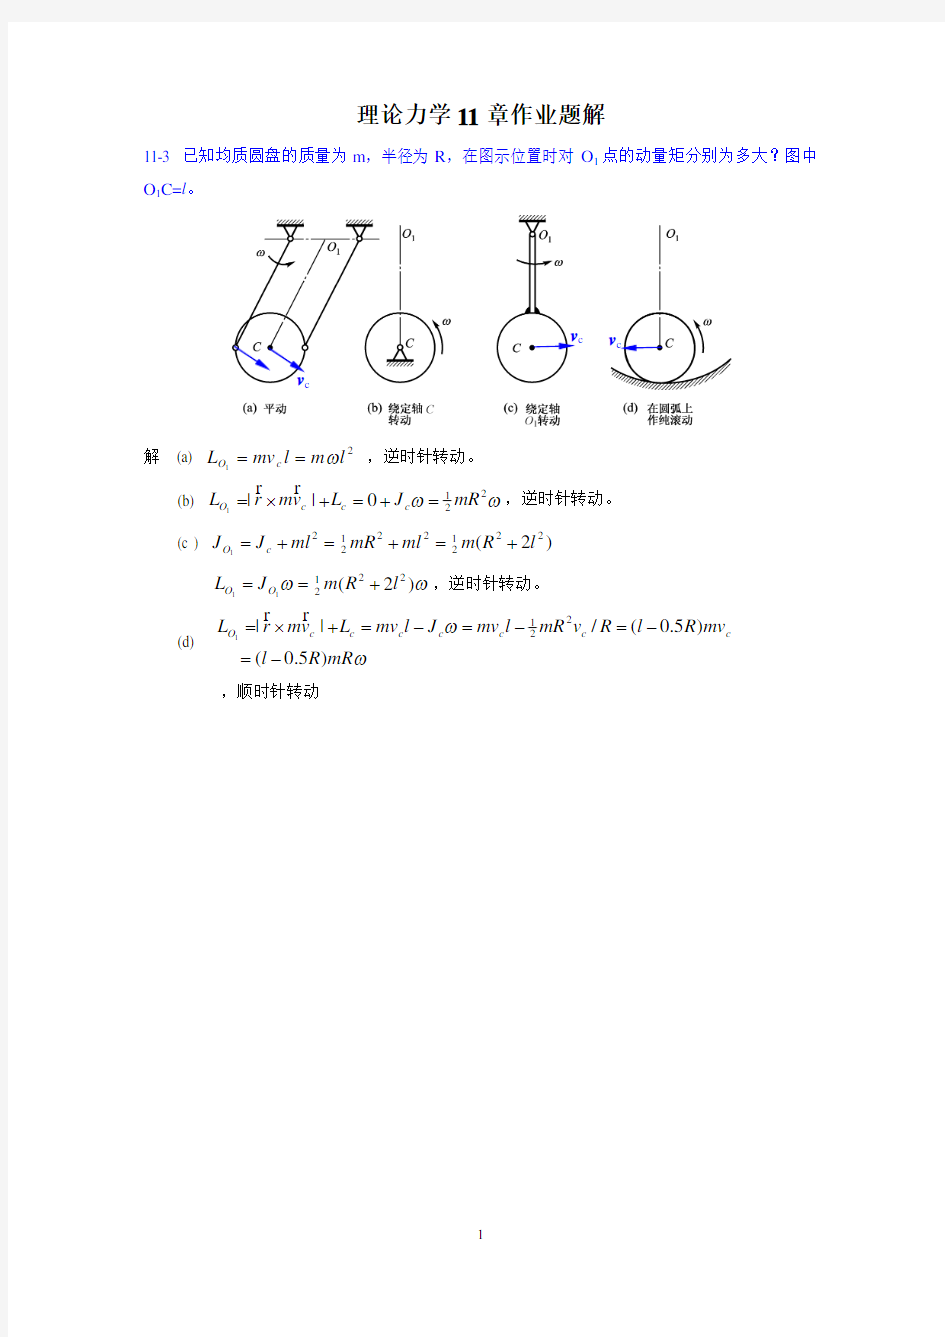 11章作业题解-动量矩定理